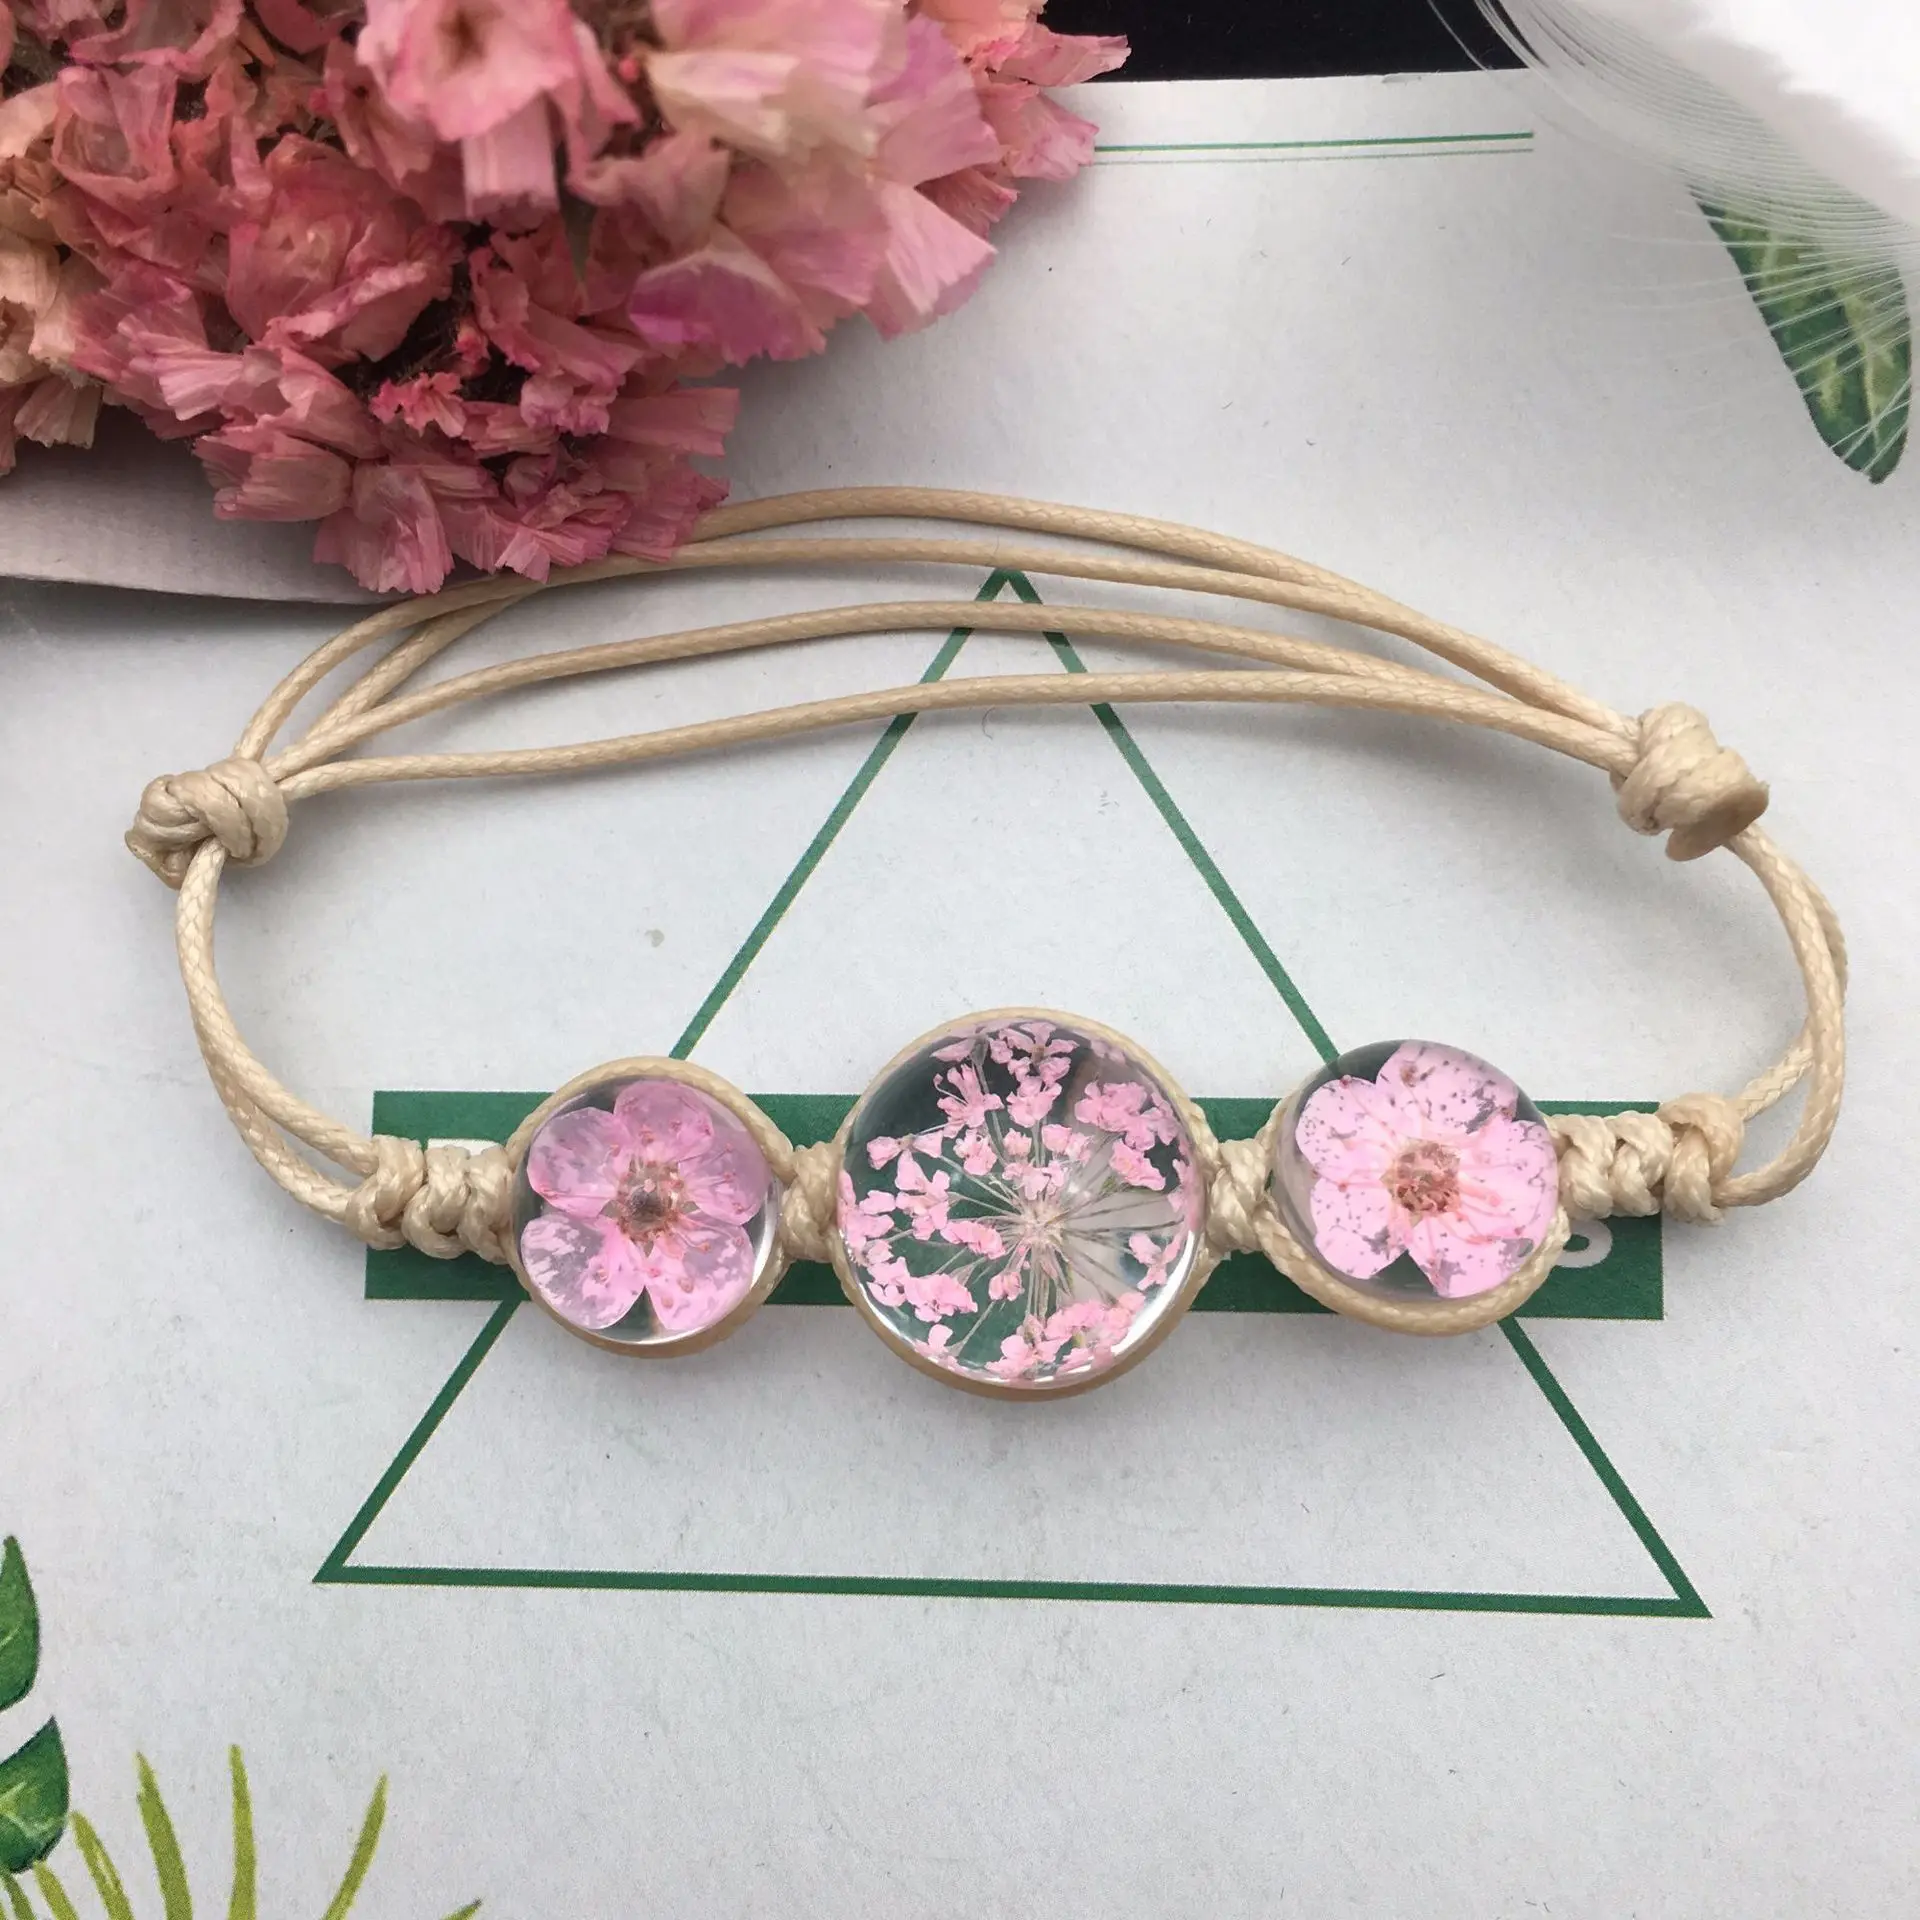 

Summer Style Glass Ball Woven Bracelet Weave Lucky Flower Bracelets Handmade Dried Flowers Glass Beads Bracelet Women Jewelry